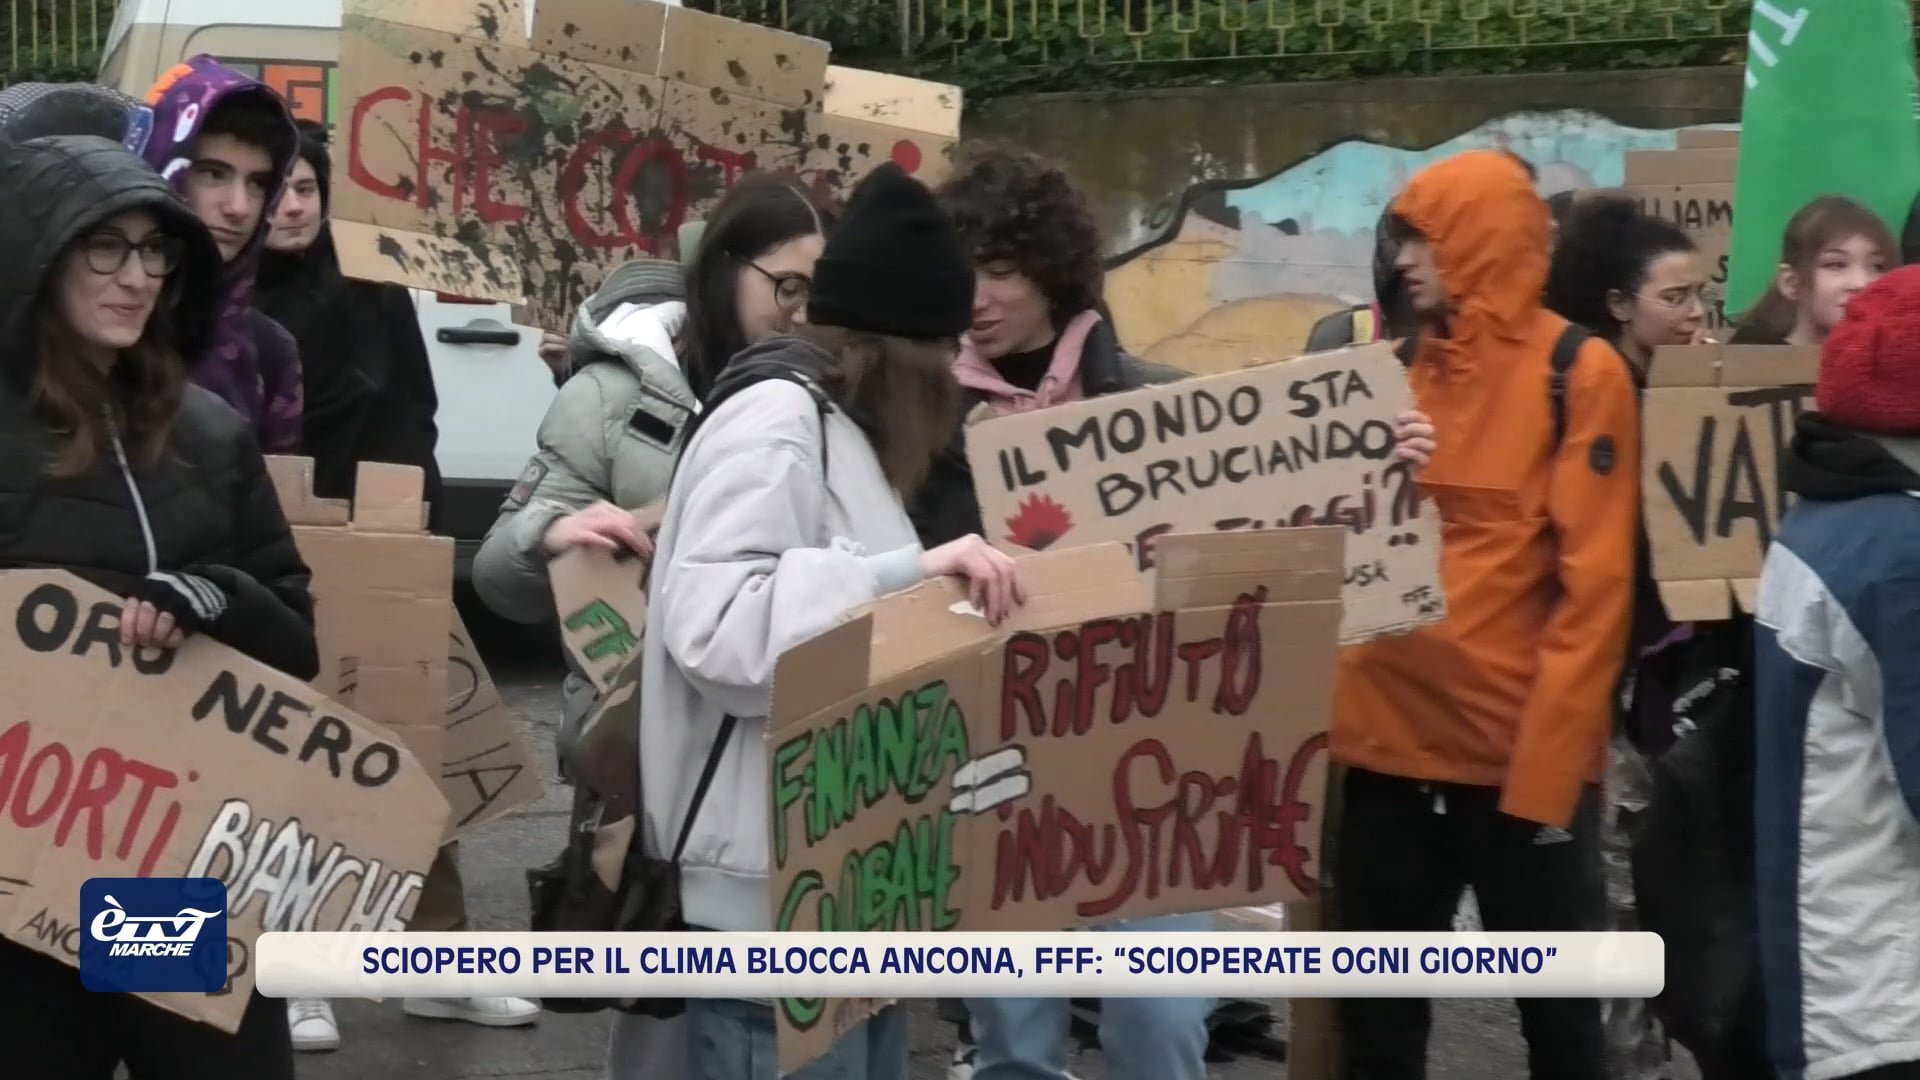 Sciopero per il clima blocca Ancona, FFF: “Scioperate ogni giorno” - VIDEO